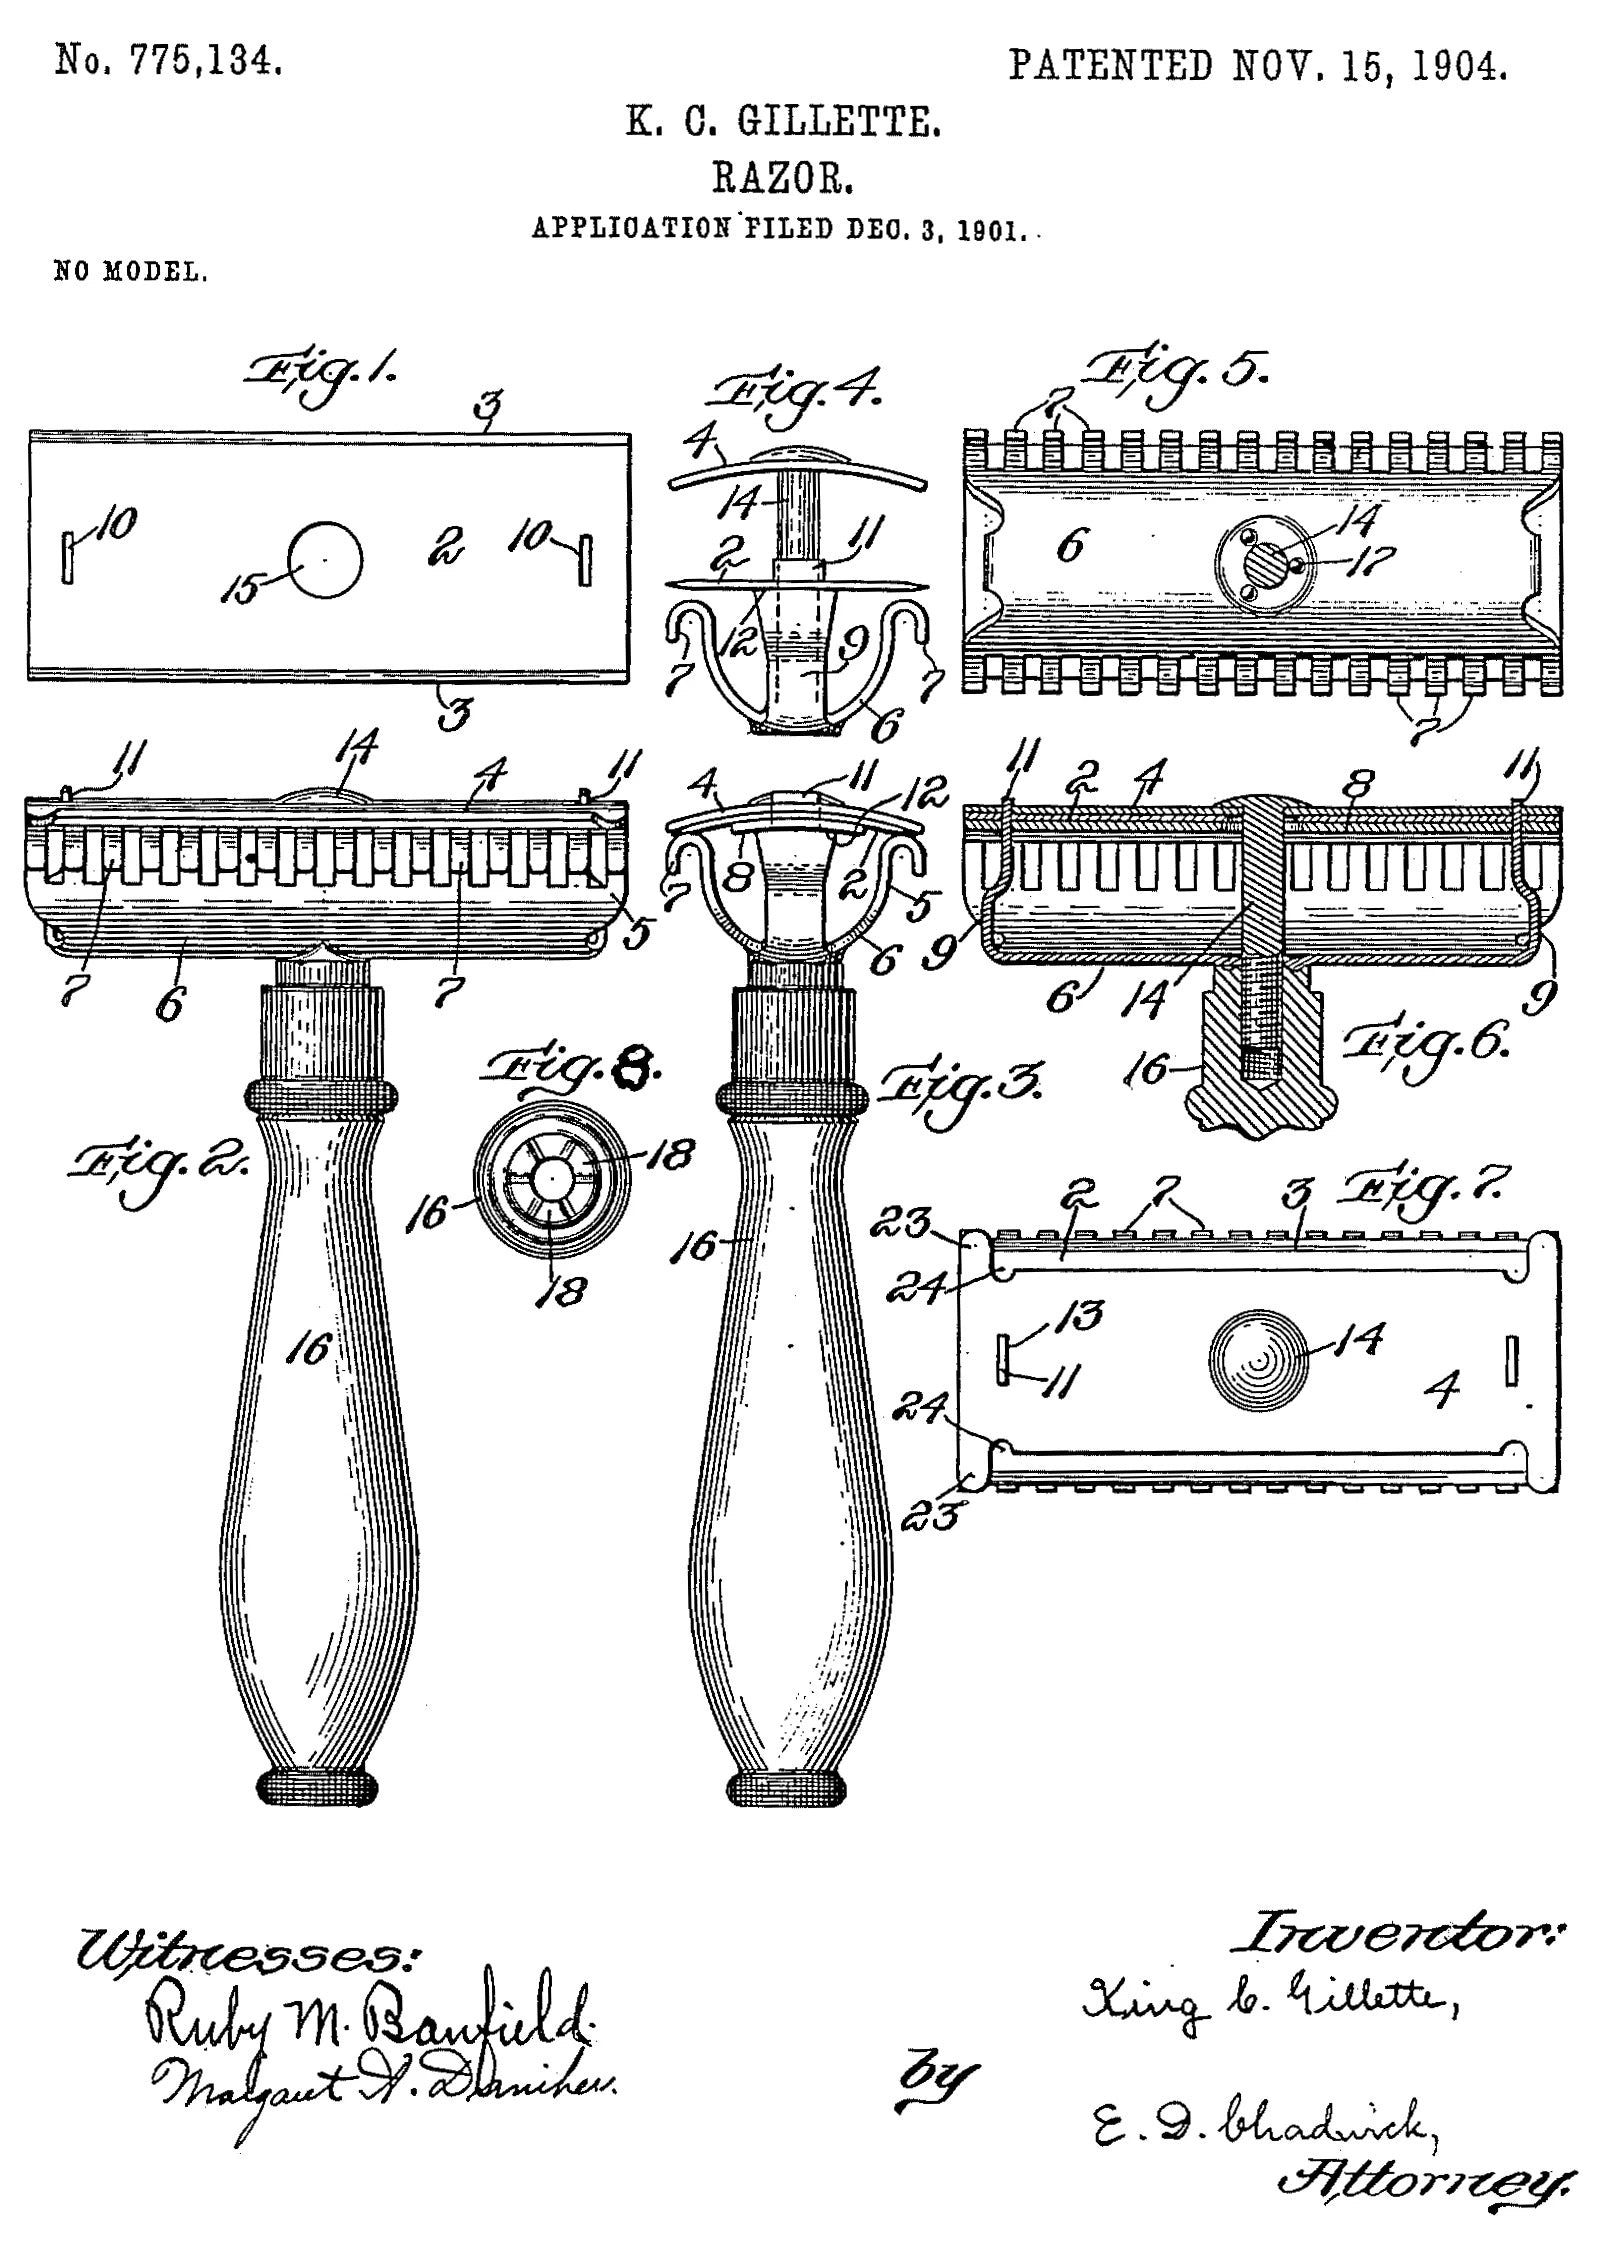 Illustrasjon fra 1904 som viser patent på tradisjonelt barberblad.